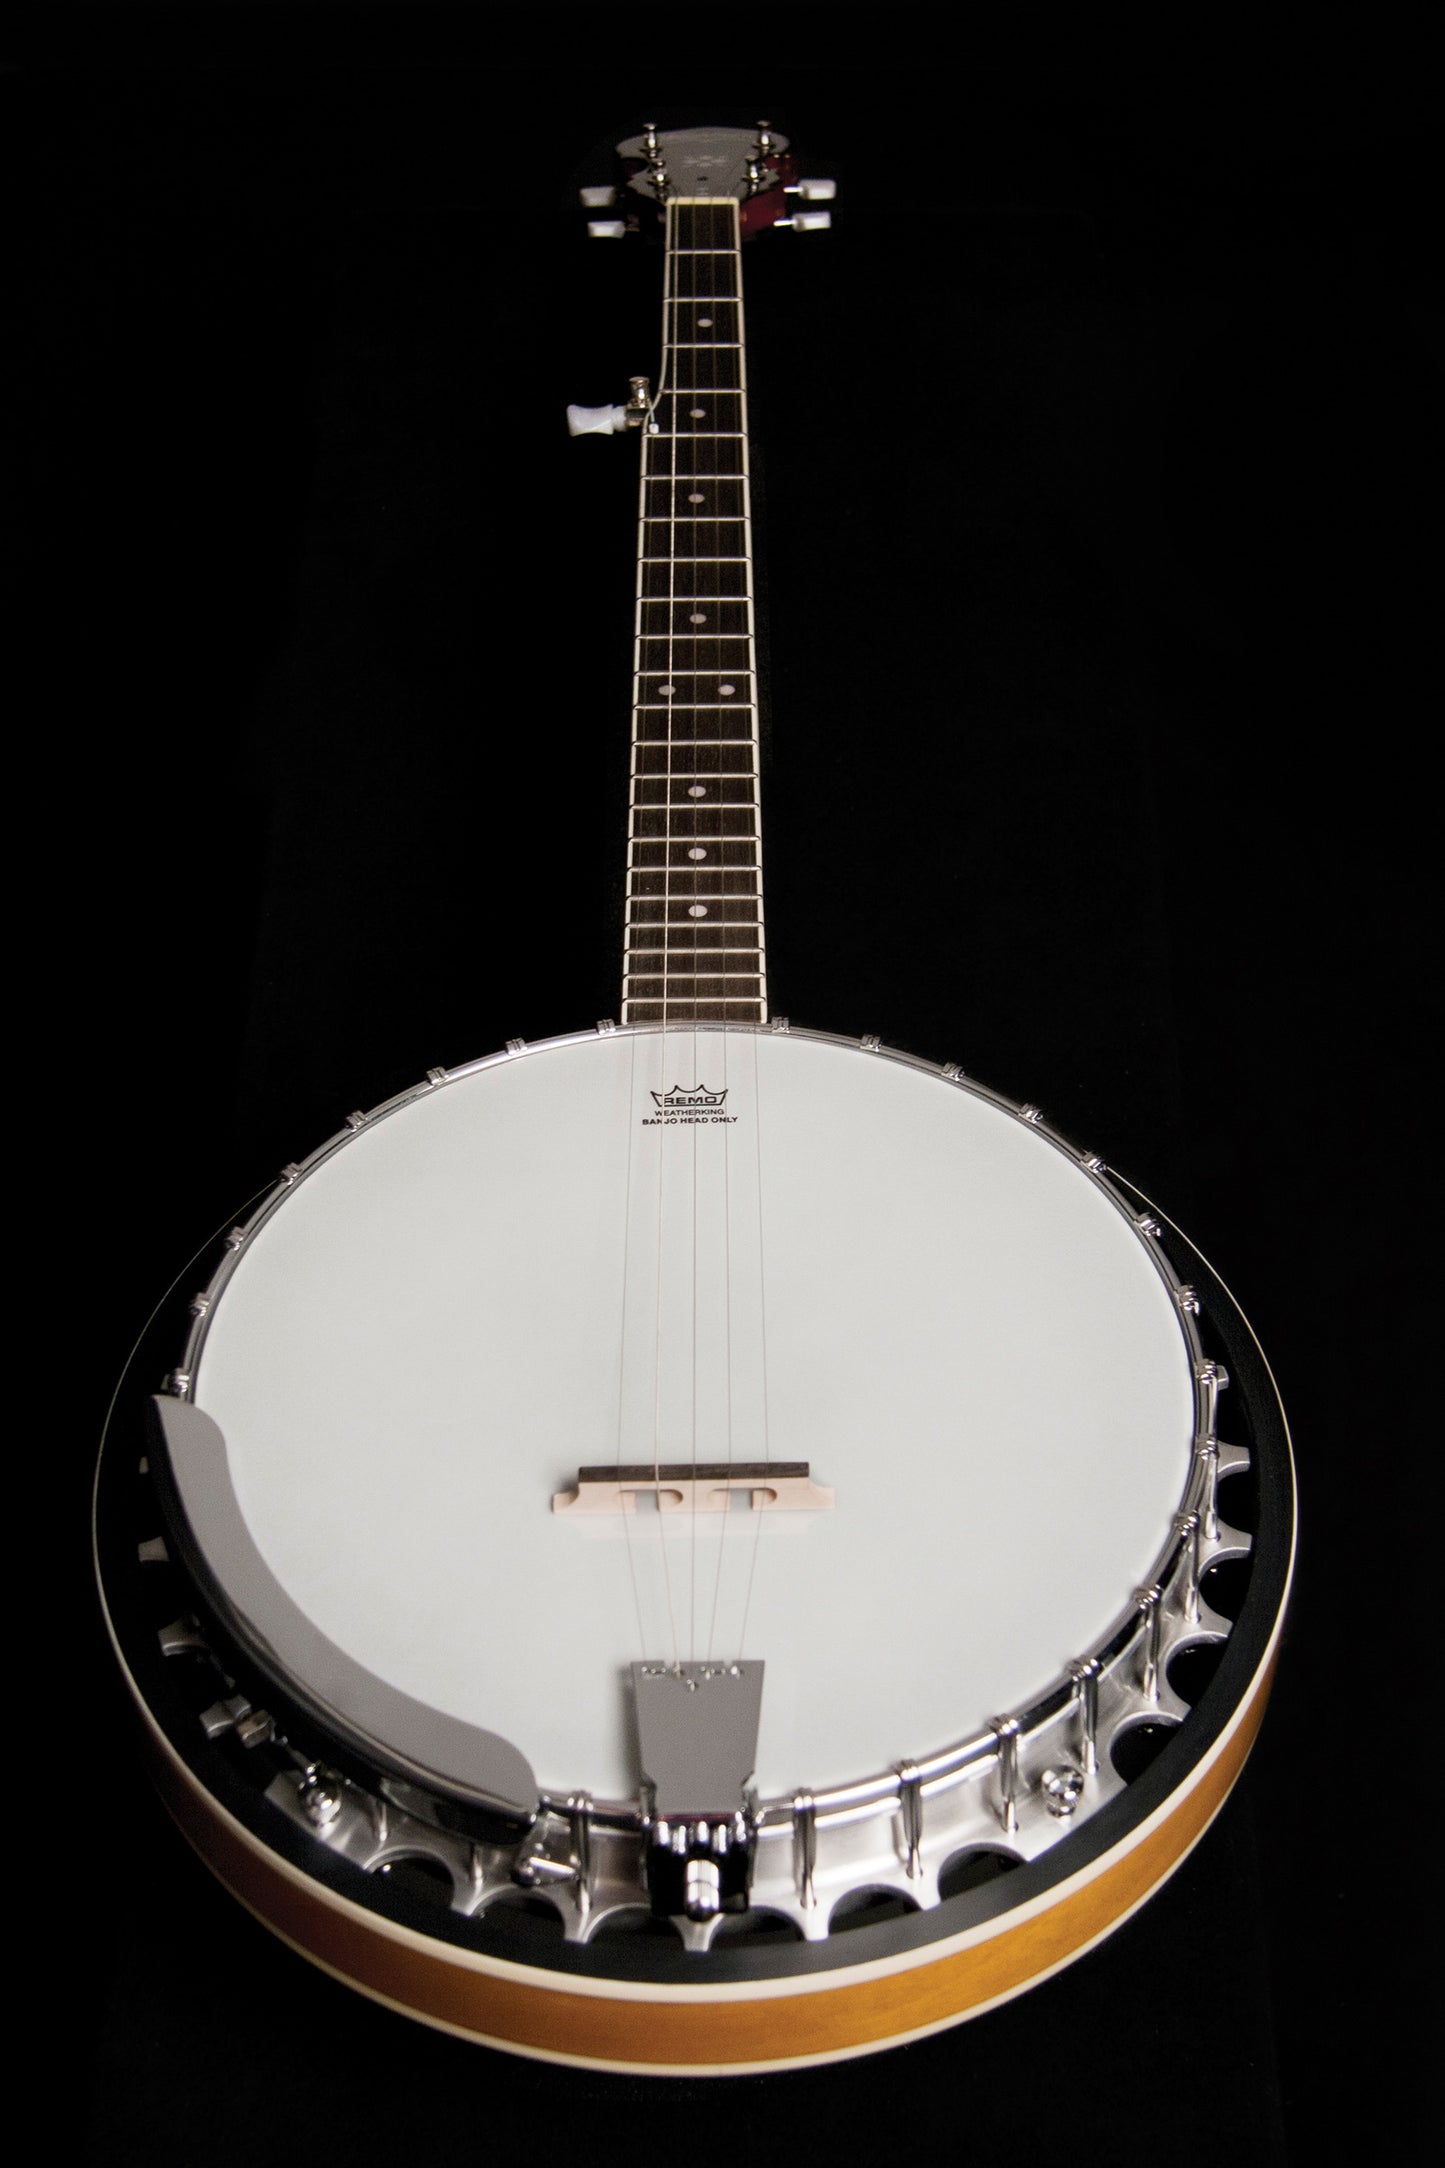 Washburn B9 Americana Series (5 String) Banjo. Sunburst Item ID: B9-WSH-A-U